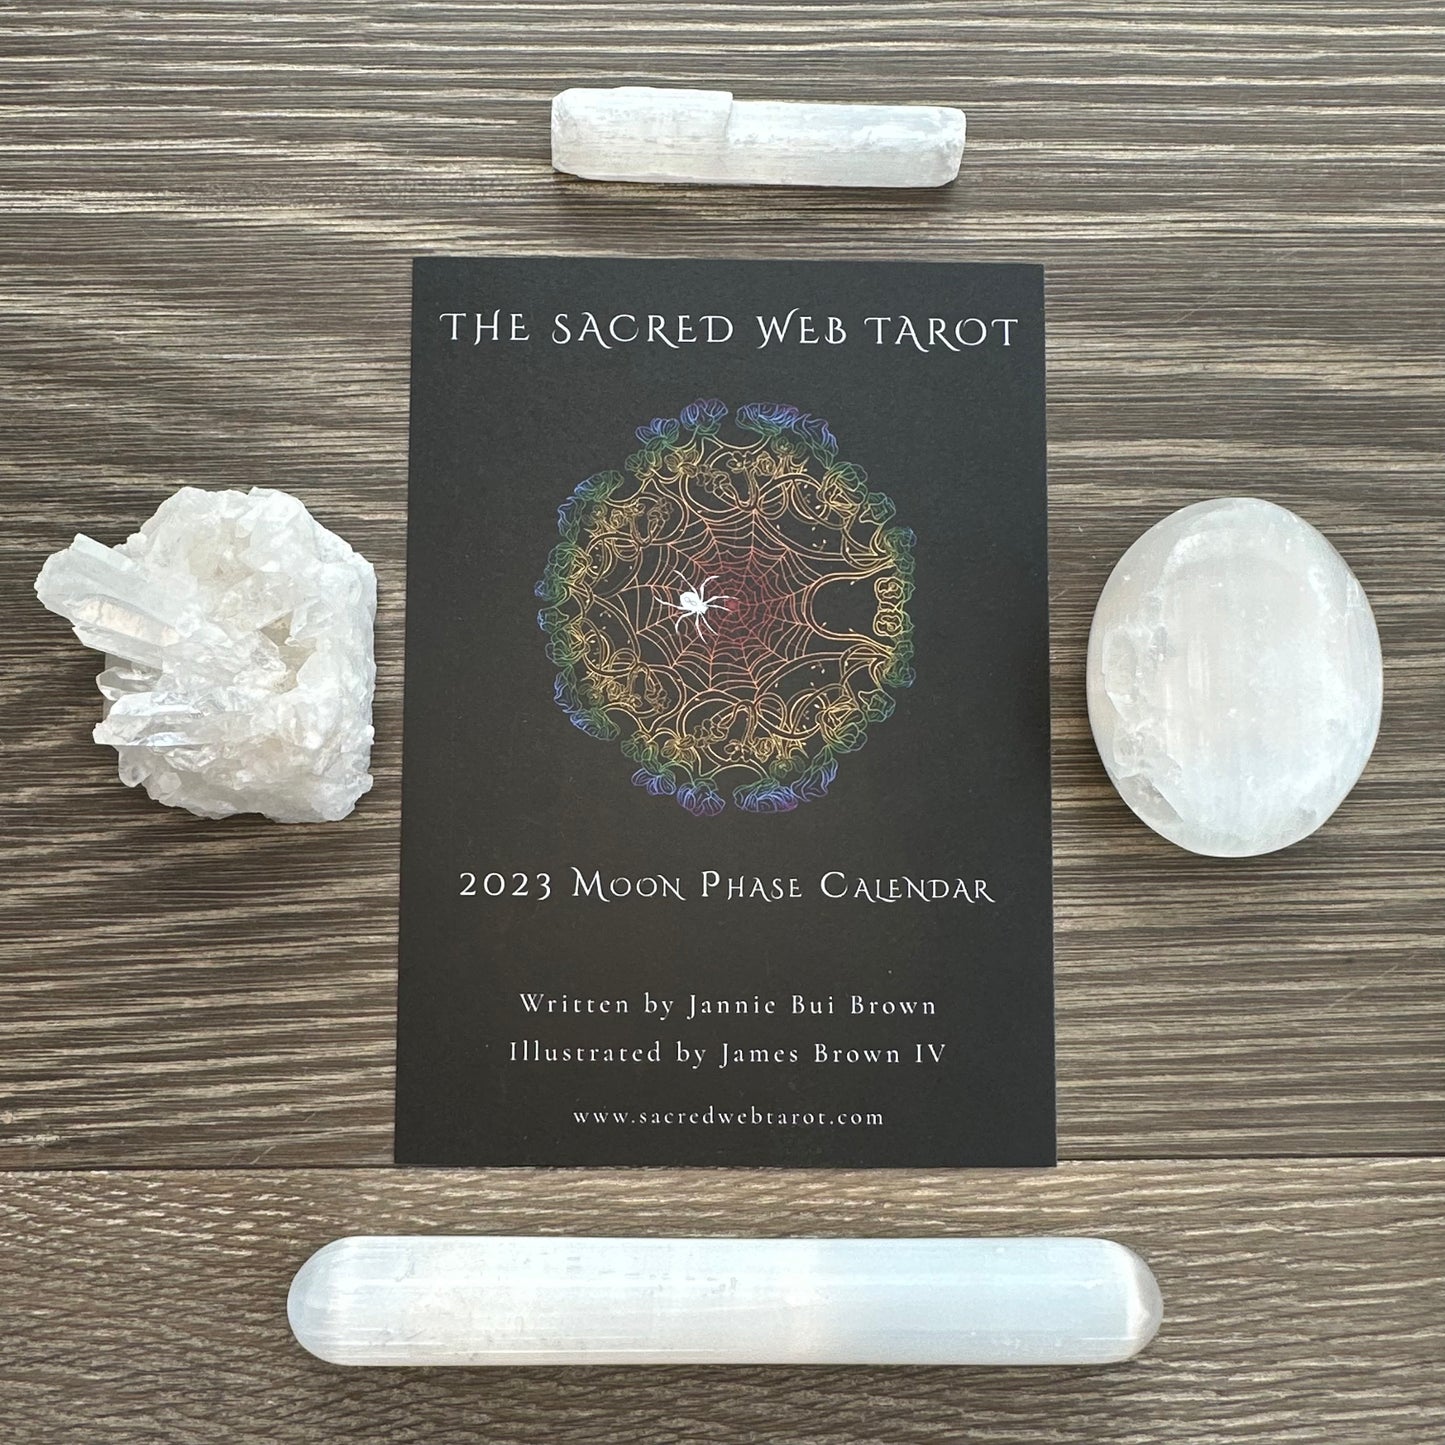 The Sacred Web Tarot 2023 Moon Phase Calendar